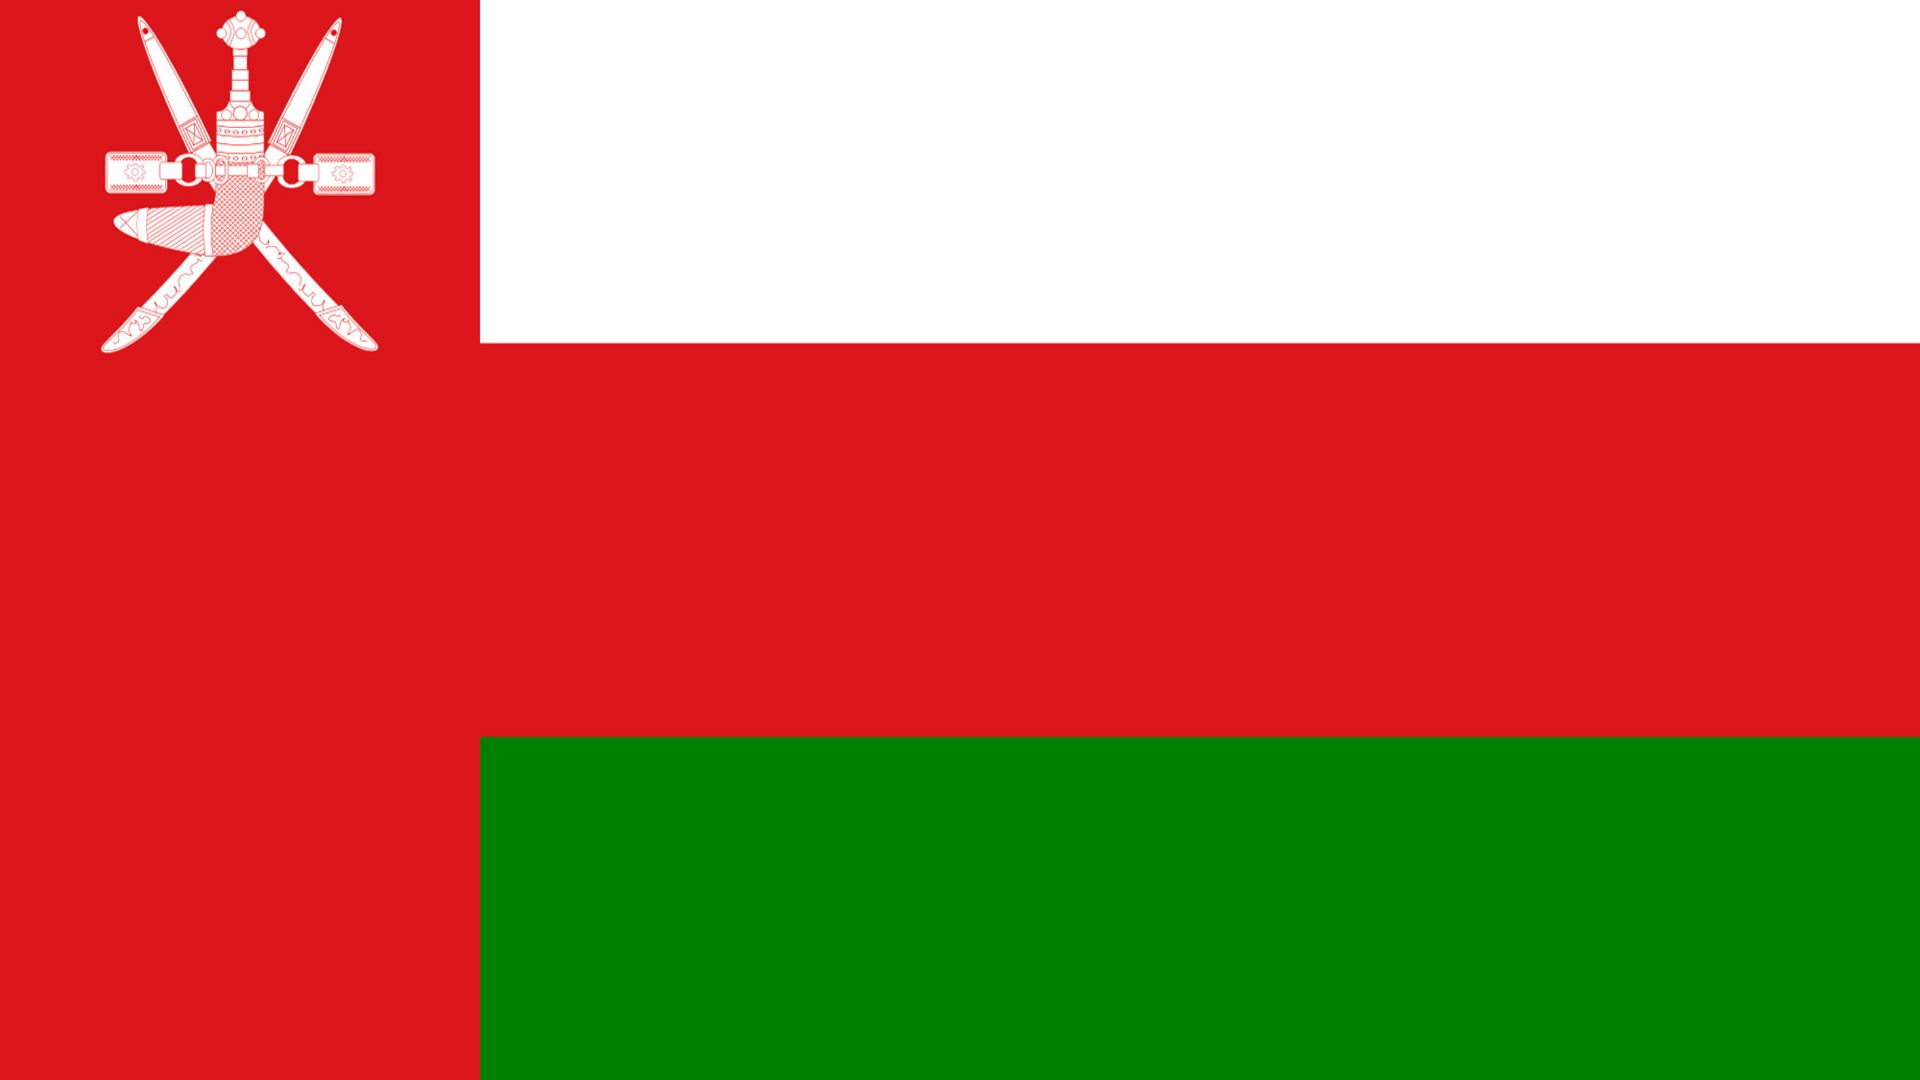 A bandeira de Omã é composta por riscas horizontais de três cores (branco, verde e vermelho) com uma barra à esquerda onde se apresenta o símbolo nacional de Omã.